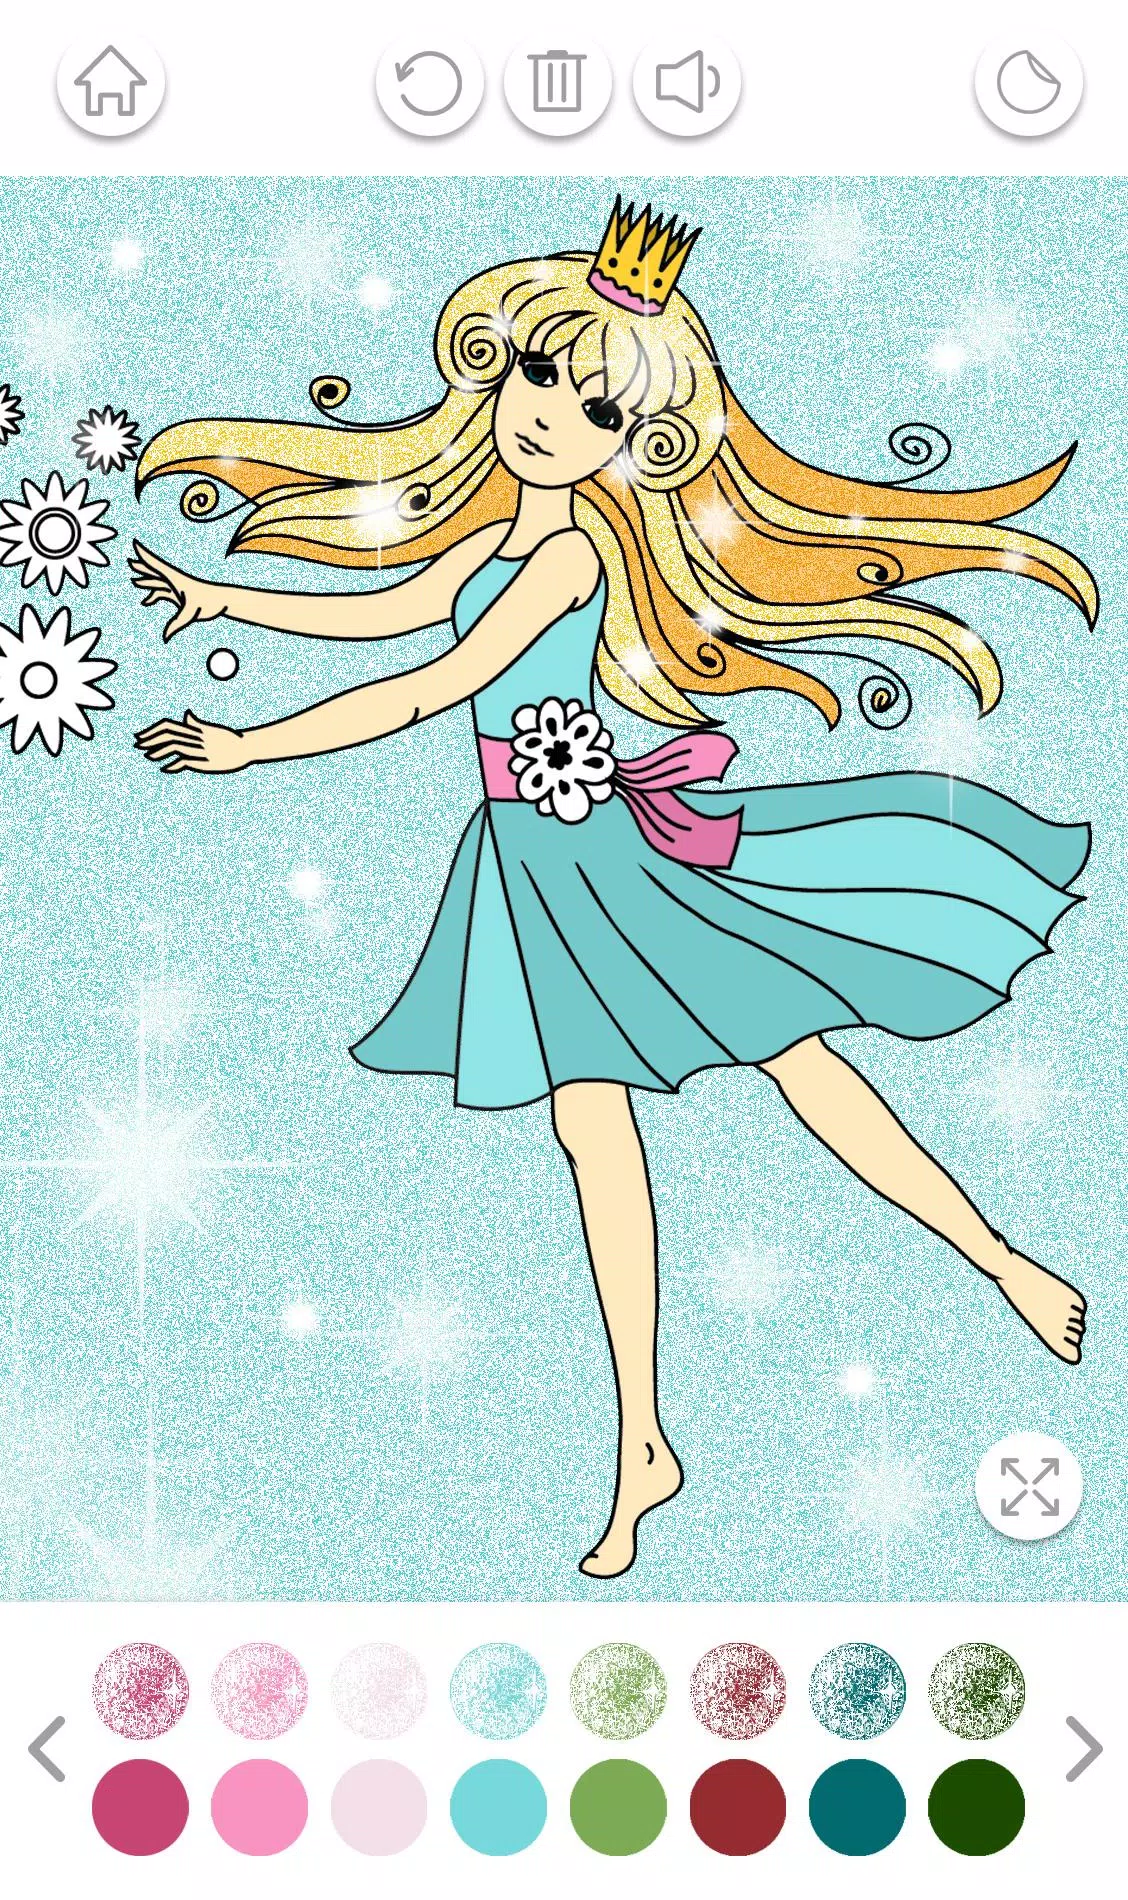 Download do APK de Jogo de pintar barbie princesa para Android